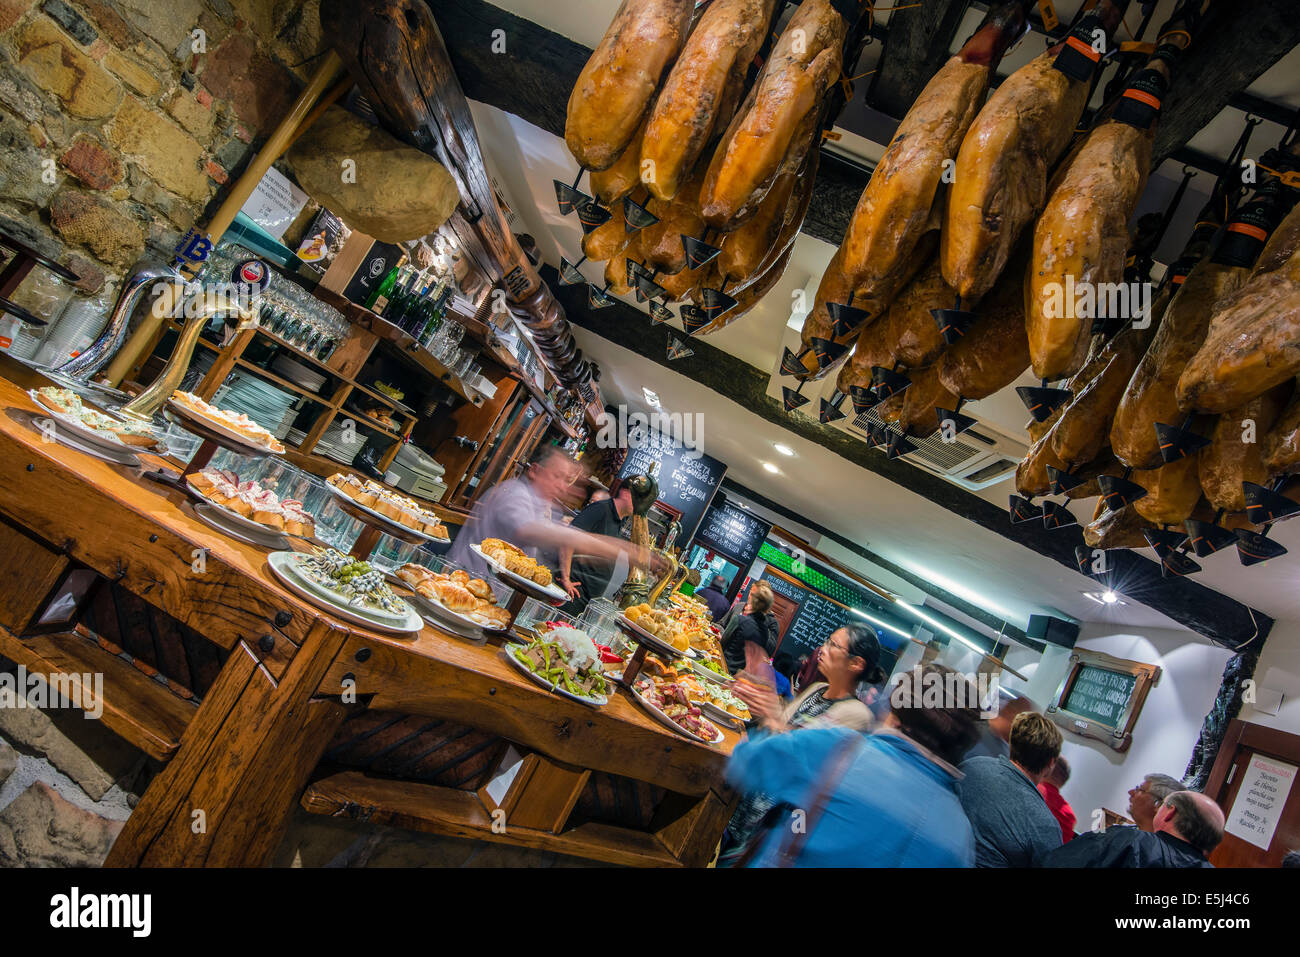 Pinchos or pintxos served in a bar of Donostia San Sebastian, Gipuzkoa, Basque Country, Spain Stock Photo